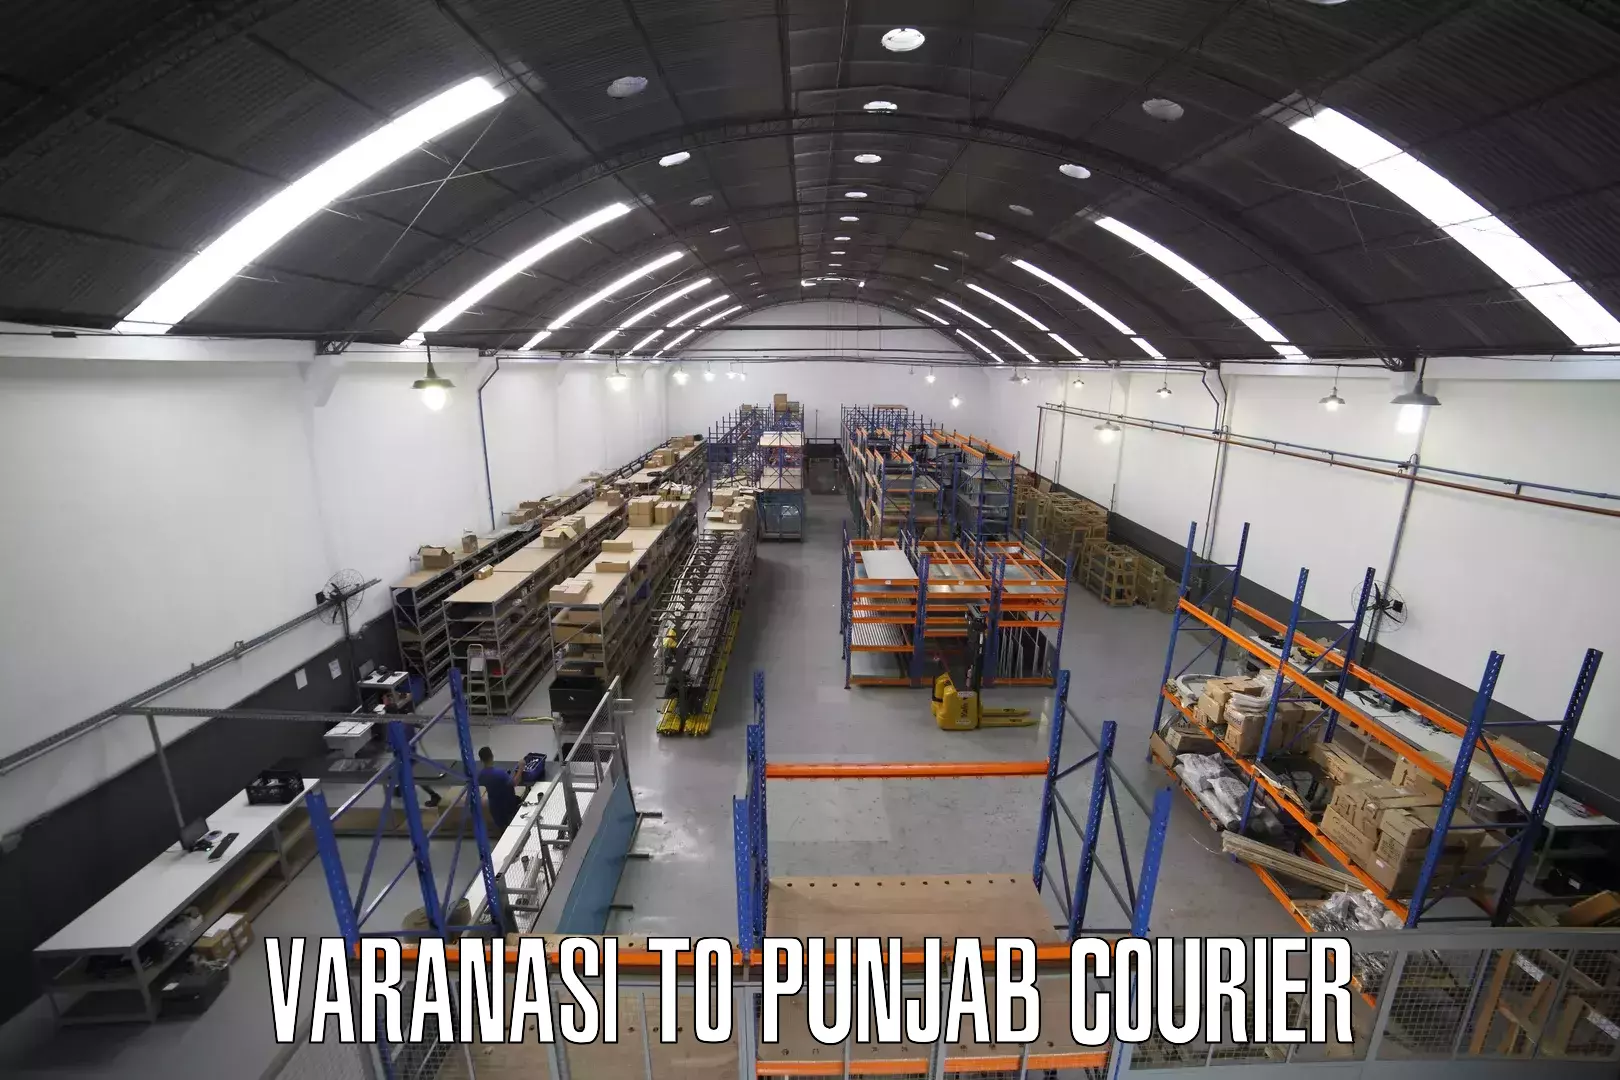 Courier service innovation Varanasi to Muktsar